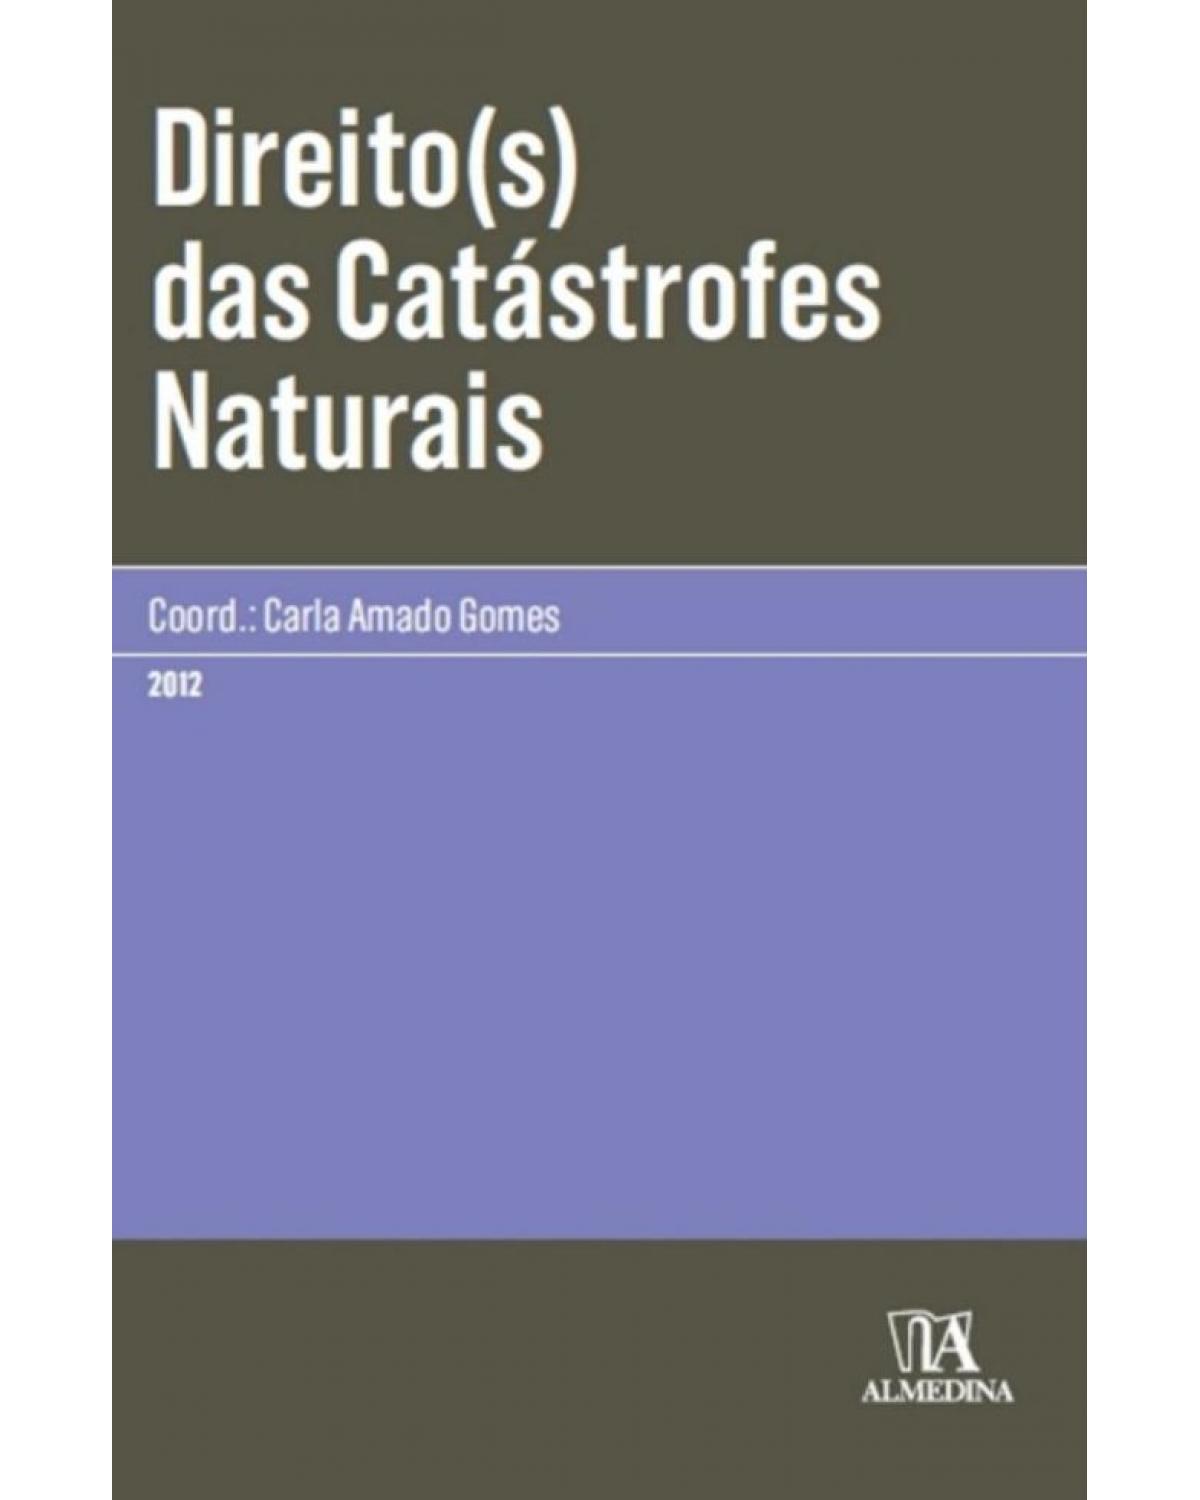 Direito(s) das catástrofes naturais - 1ª Edição | 2012